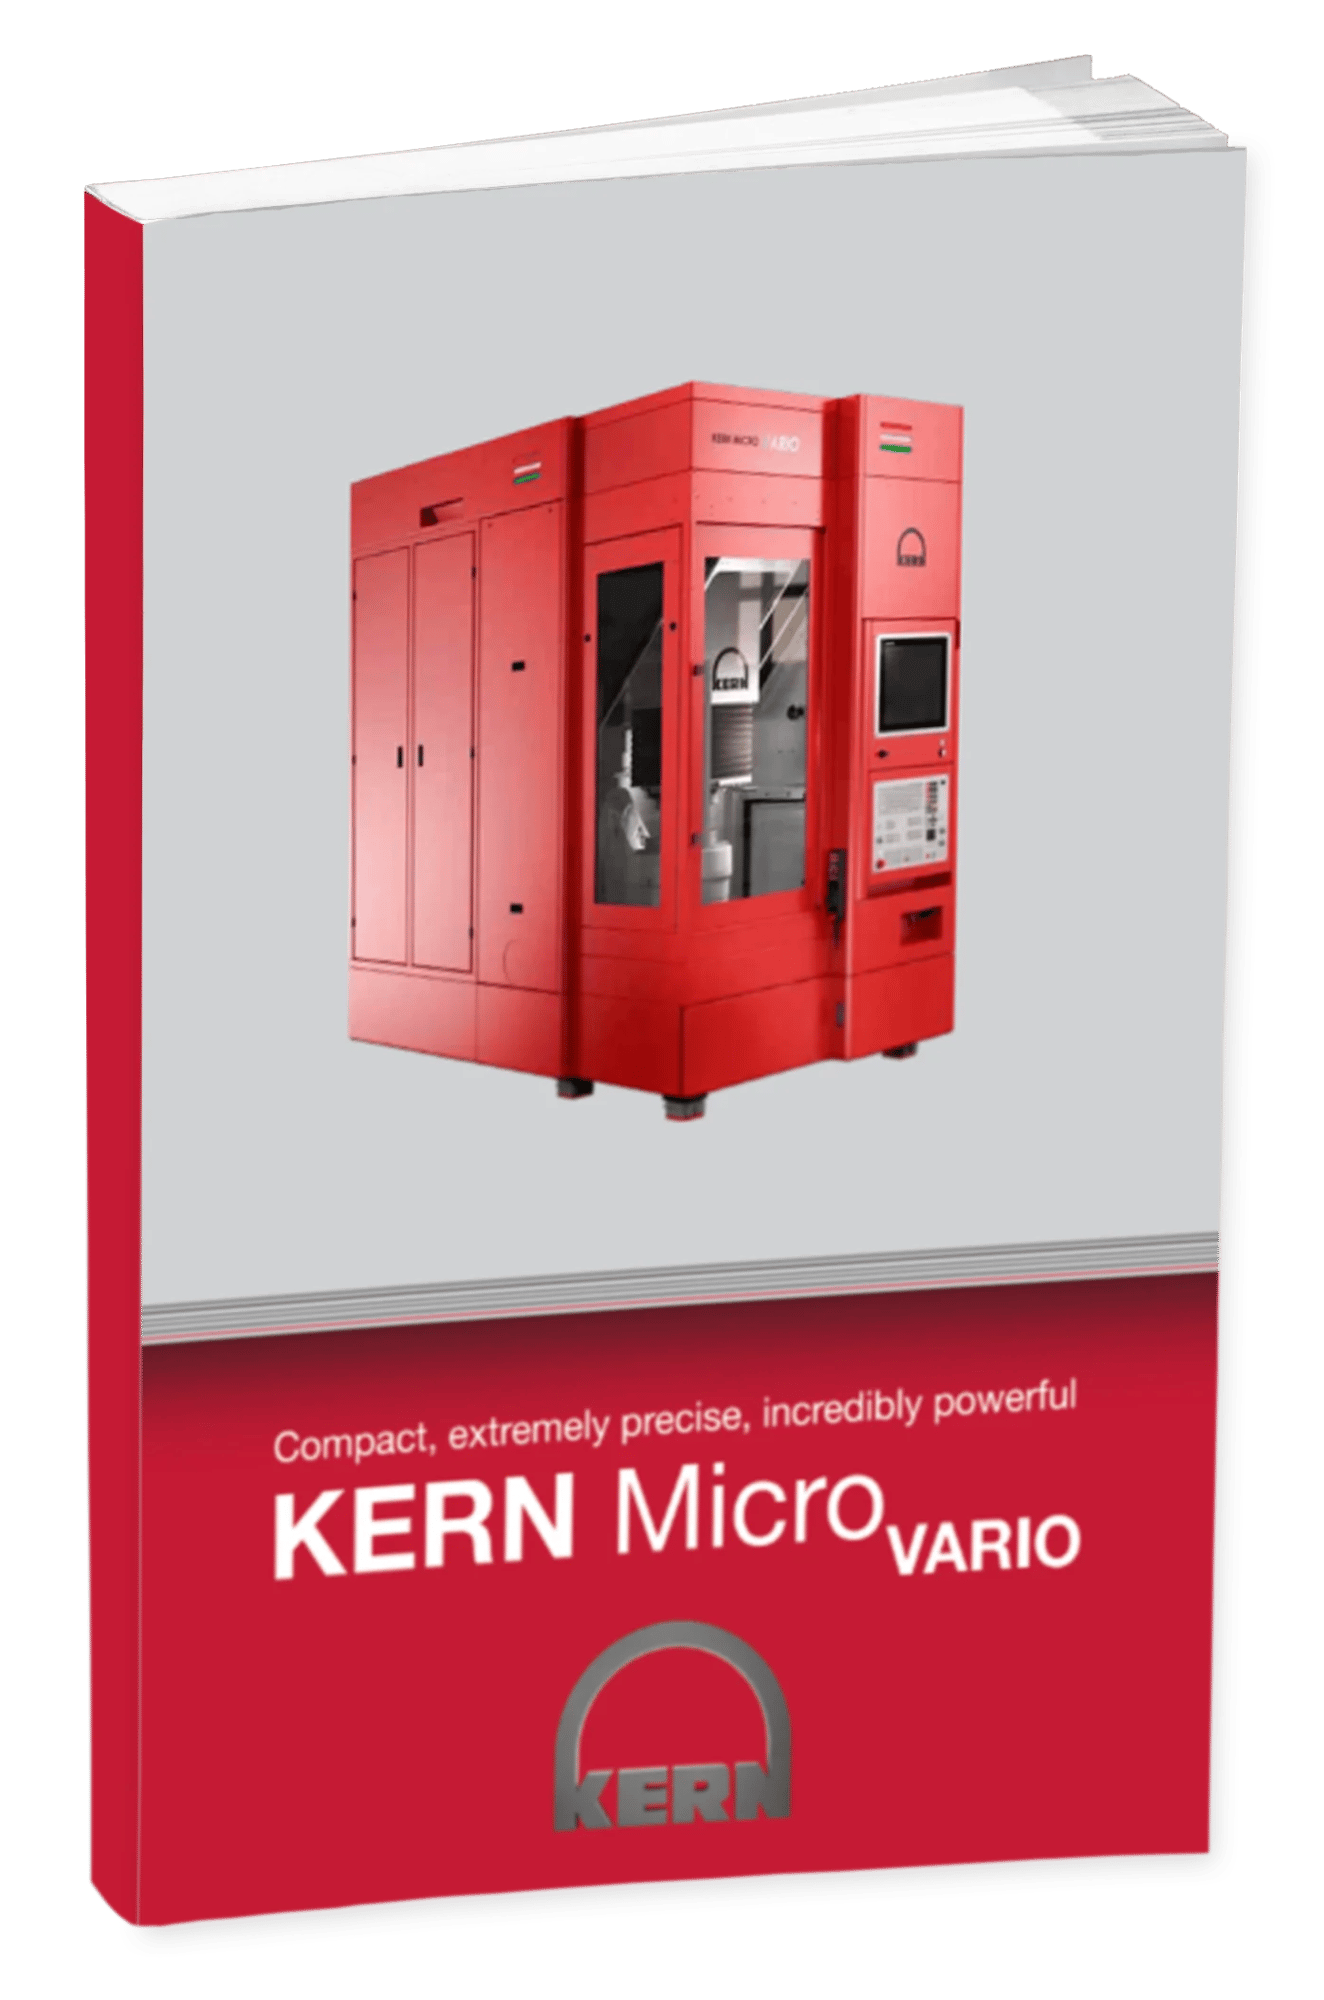 KERN Micro Vario Brochure